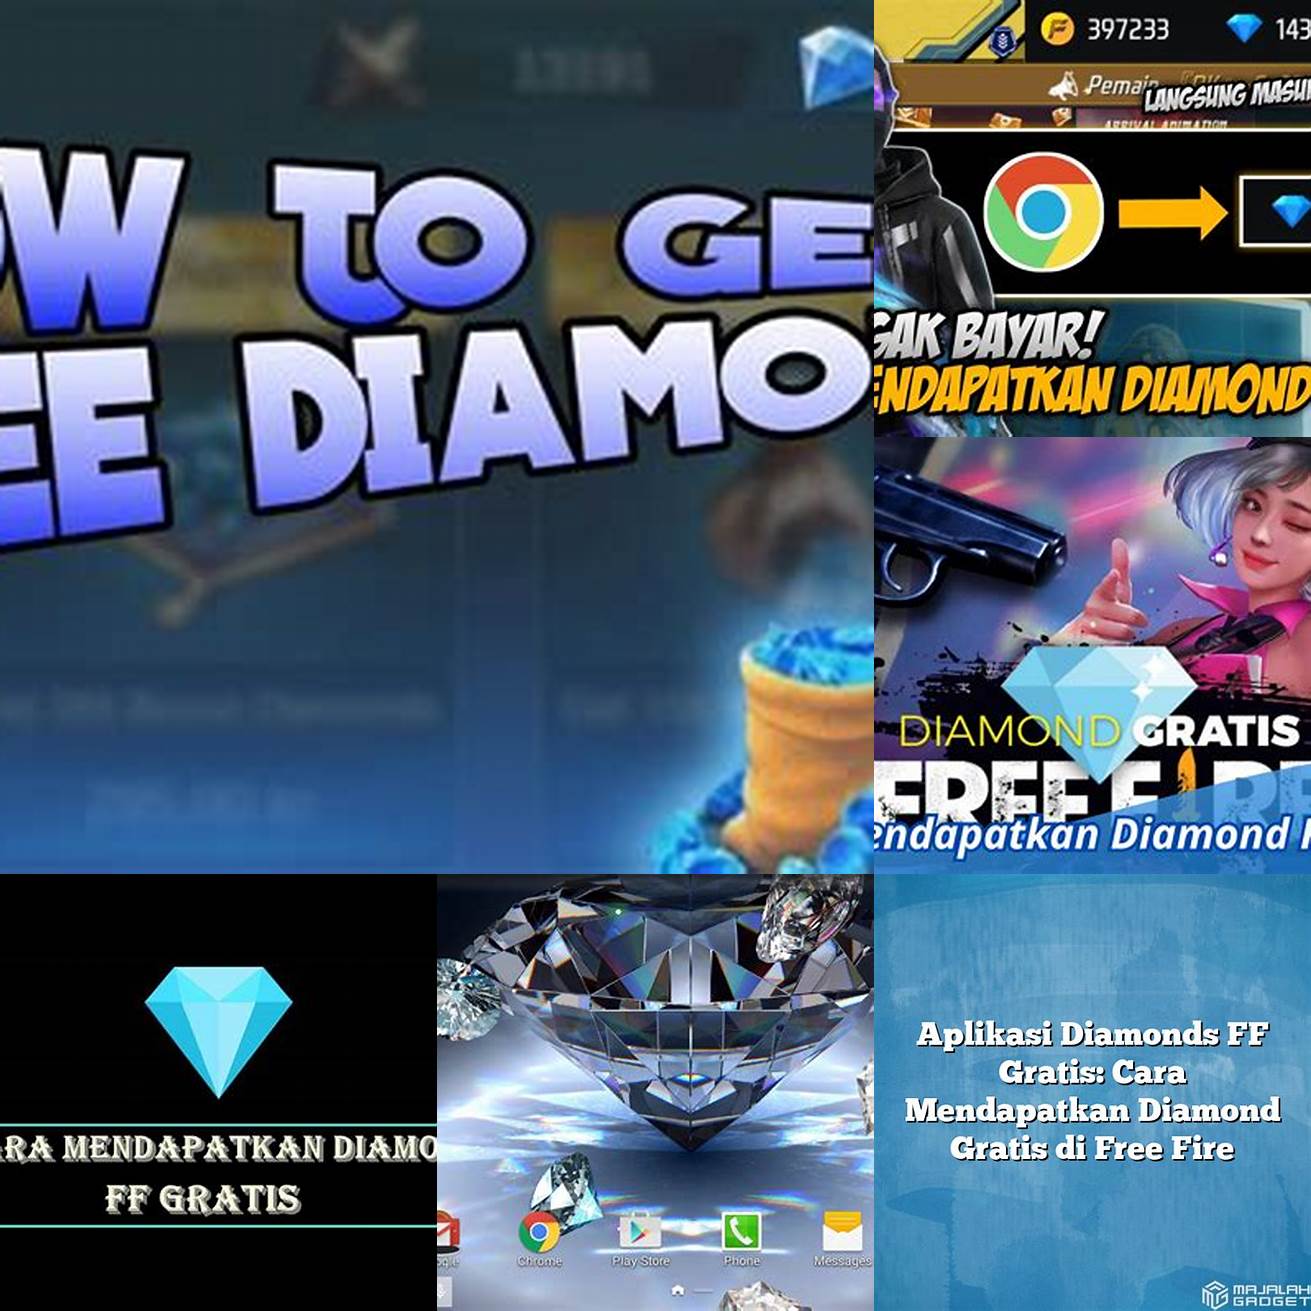 2 Apakah saya bisa mendapatkan diamond secara gratis tanpa harus menggunakan mod APK